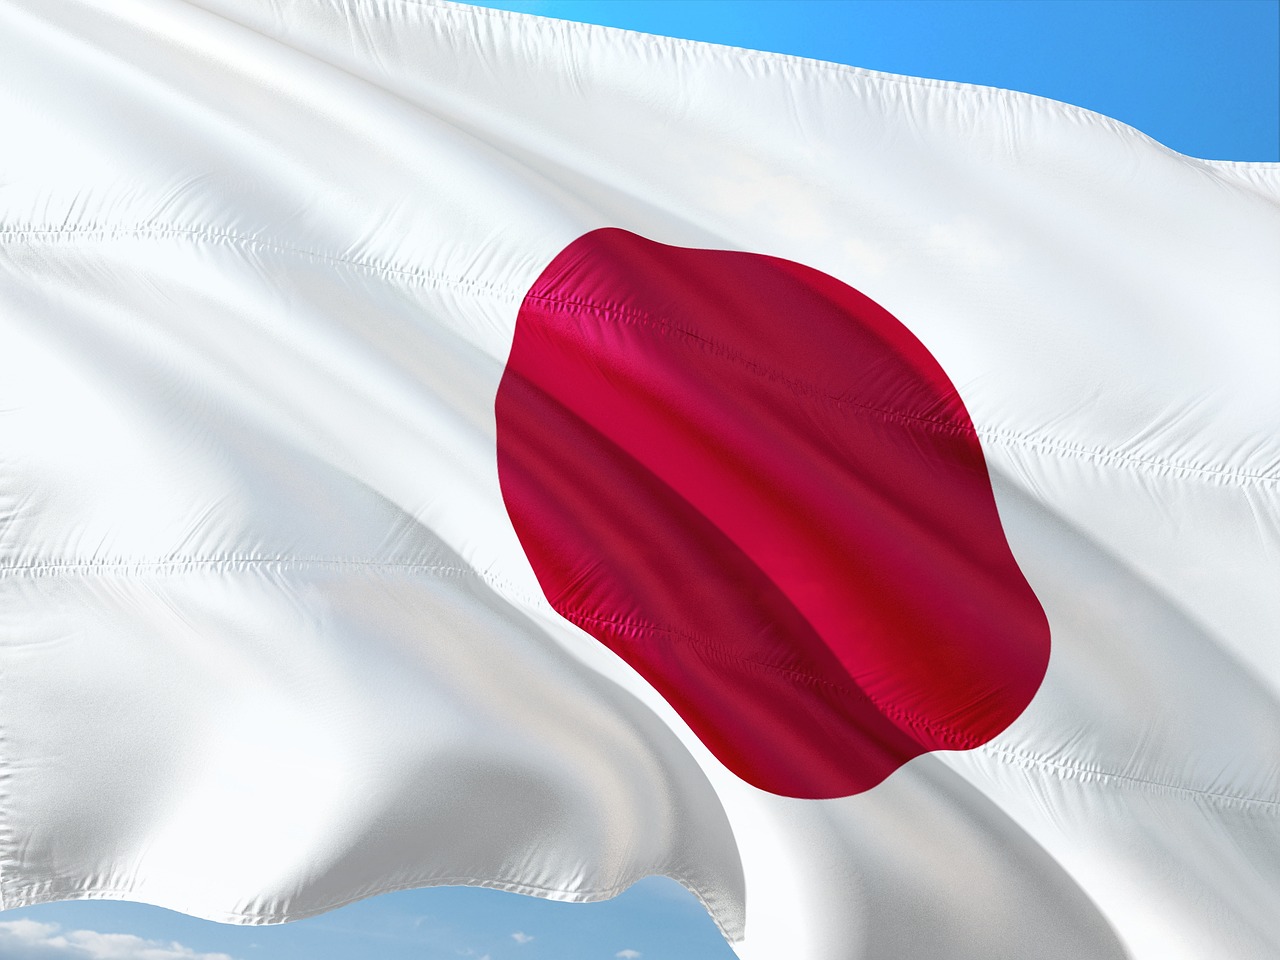 علم اليابان (بيكسباي)